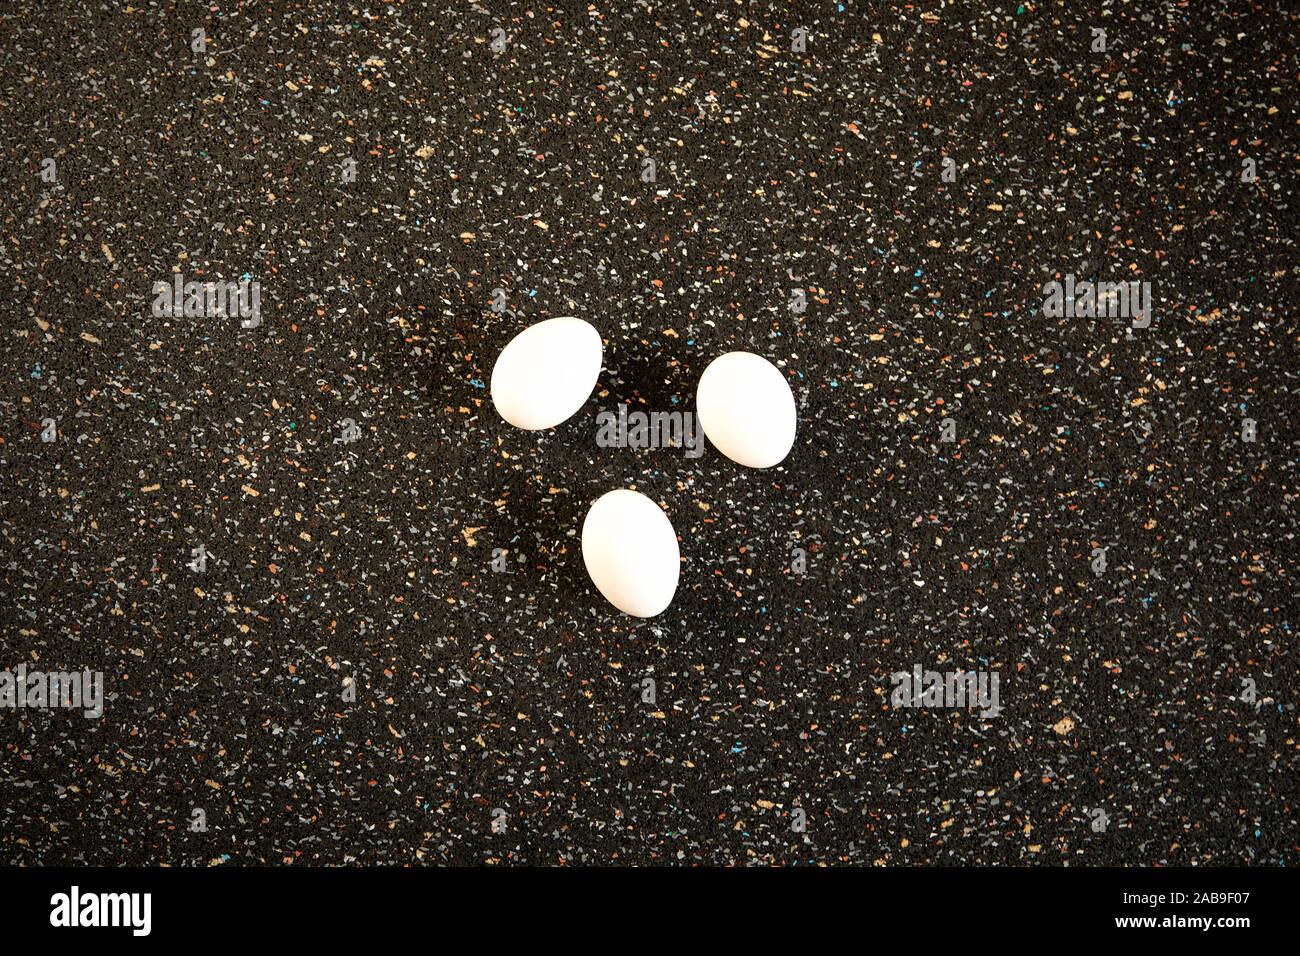 Immer noch leben, abstrakte Anordnung weiße Eier flach auf Speckle schwarzer Hintergrund mit kopieren. Minimalistischer essen Kunst Pop Art Stil. Neues Leben conc Stockfoto